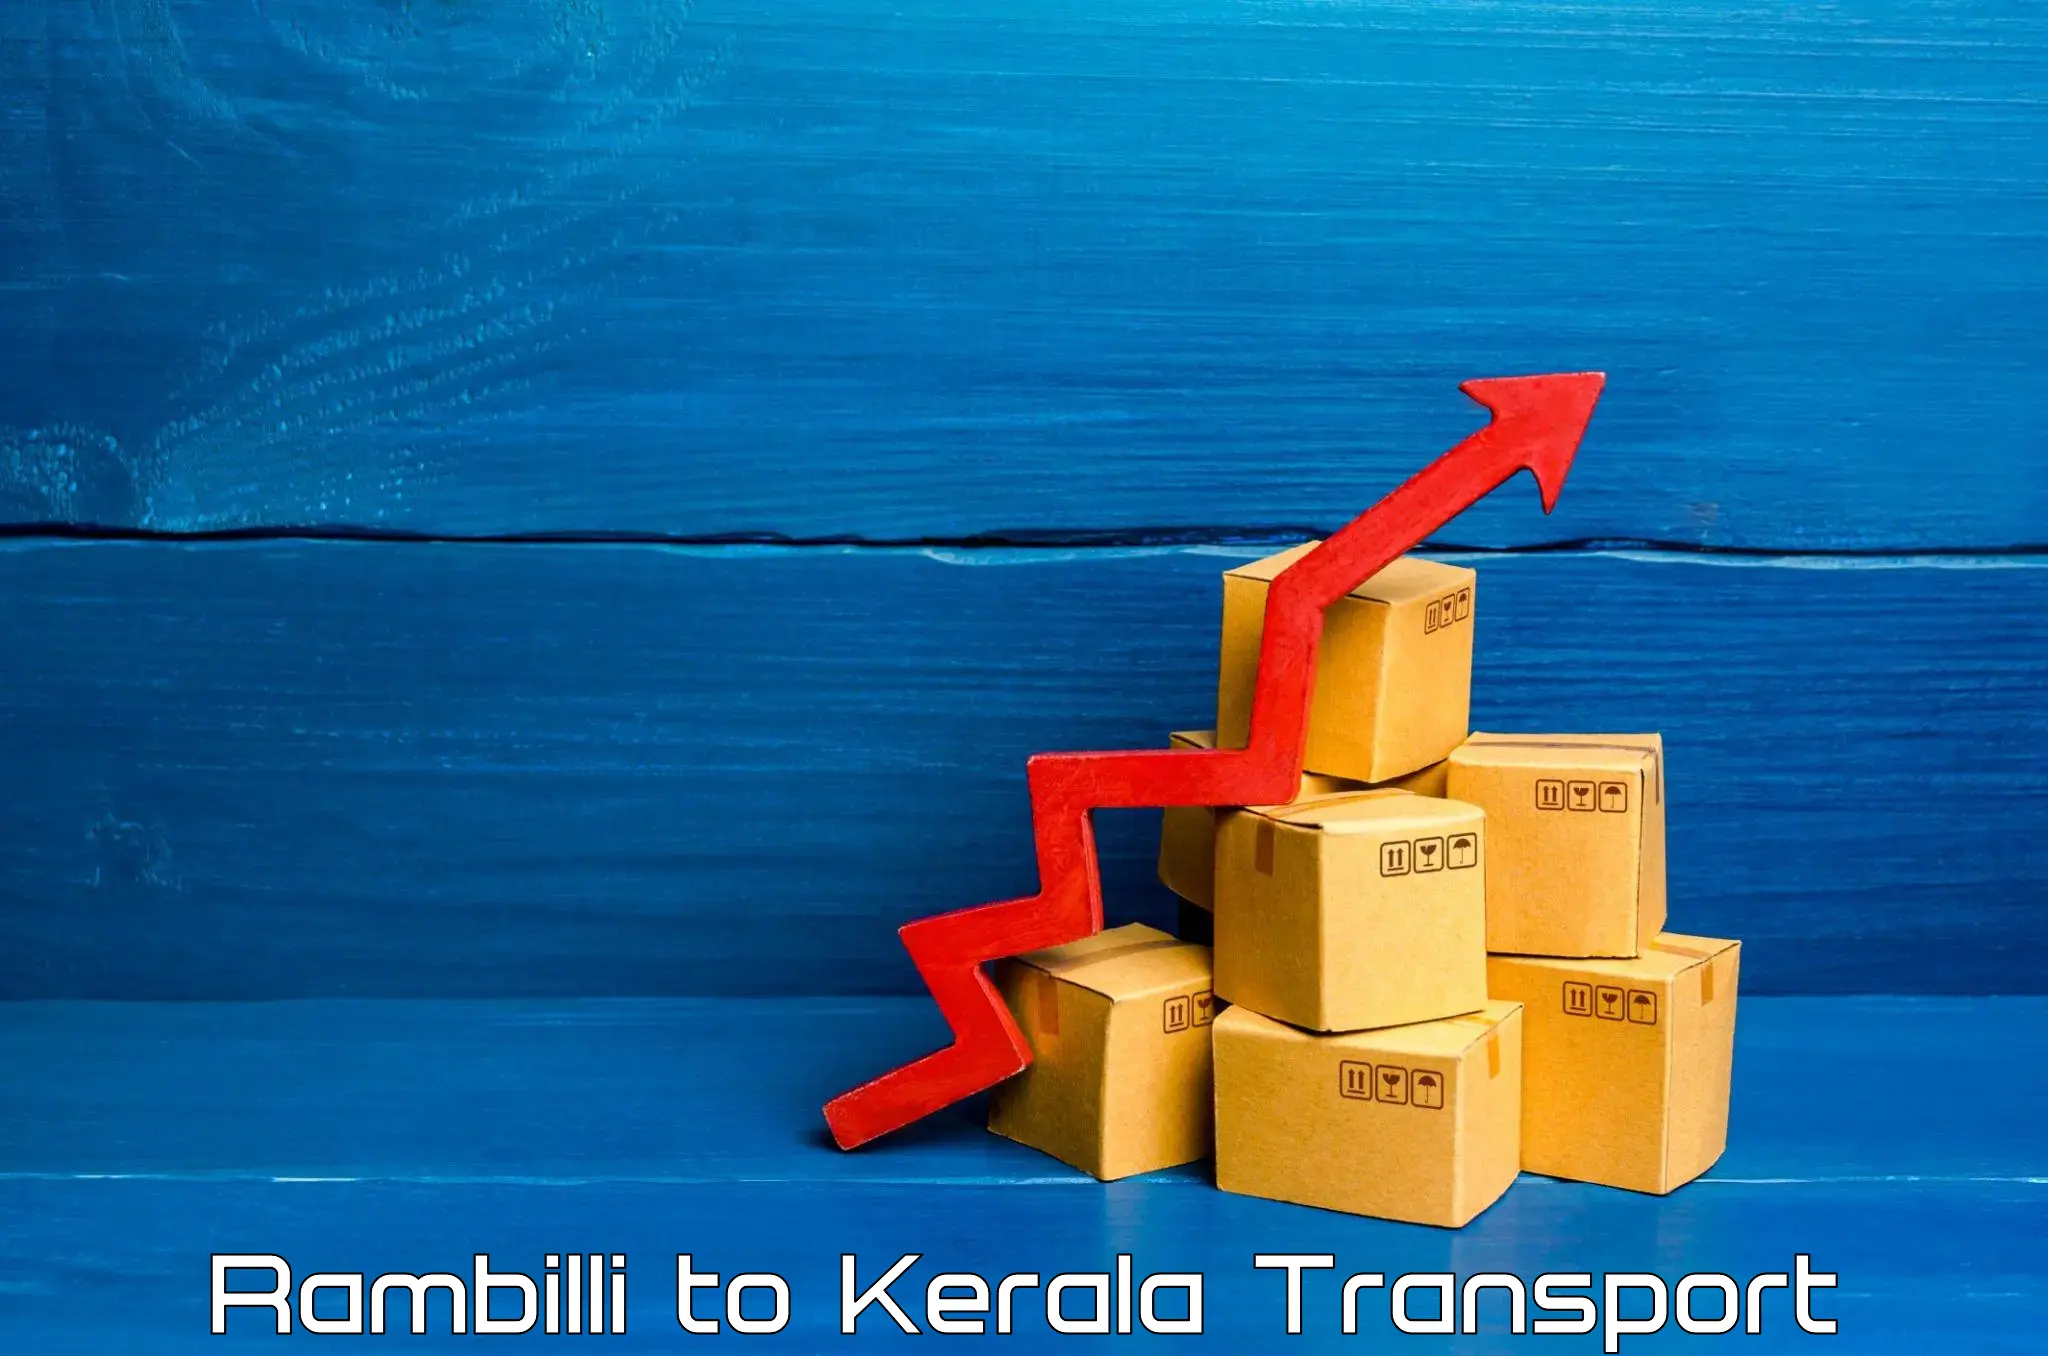 Furniture transport service Rambilli to Kallikkad